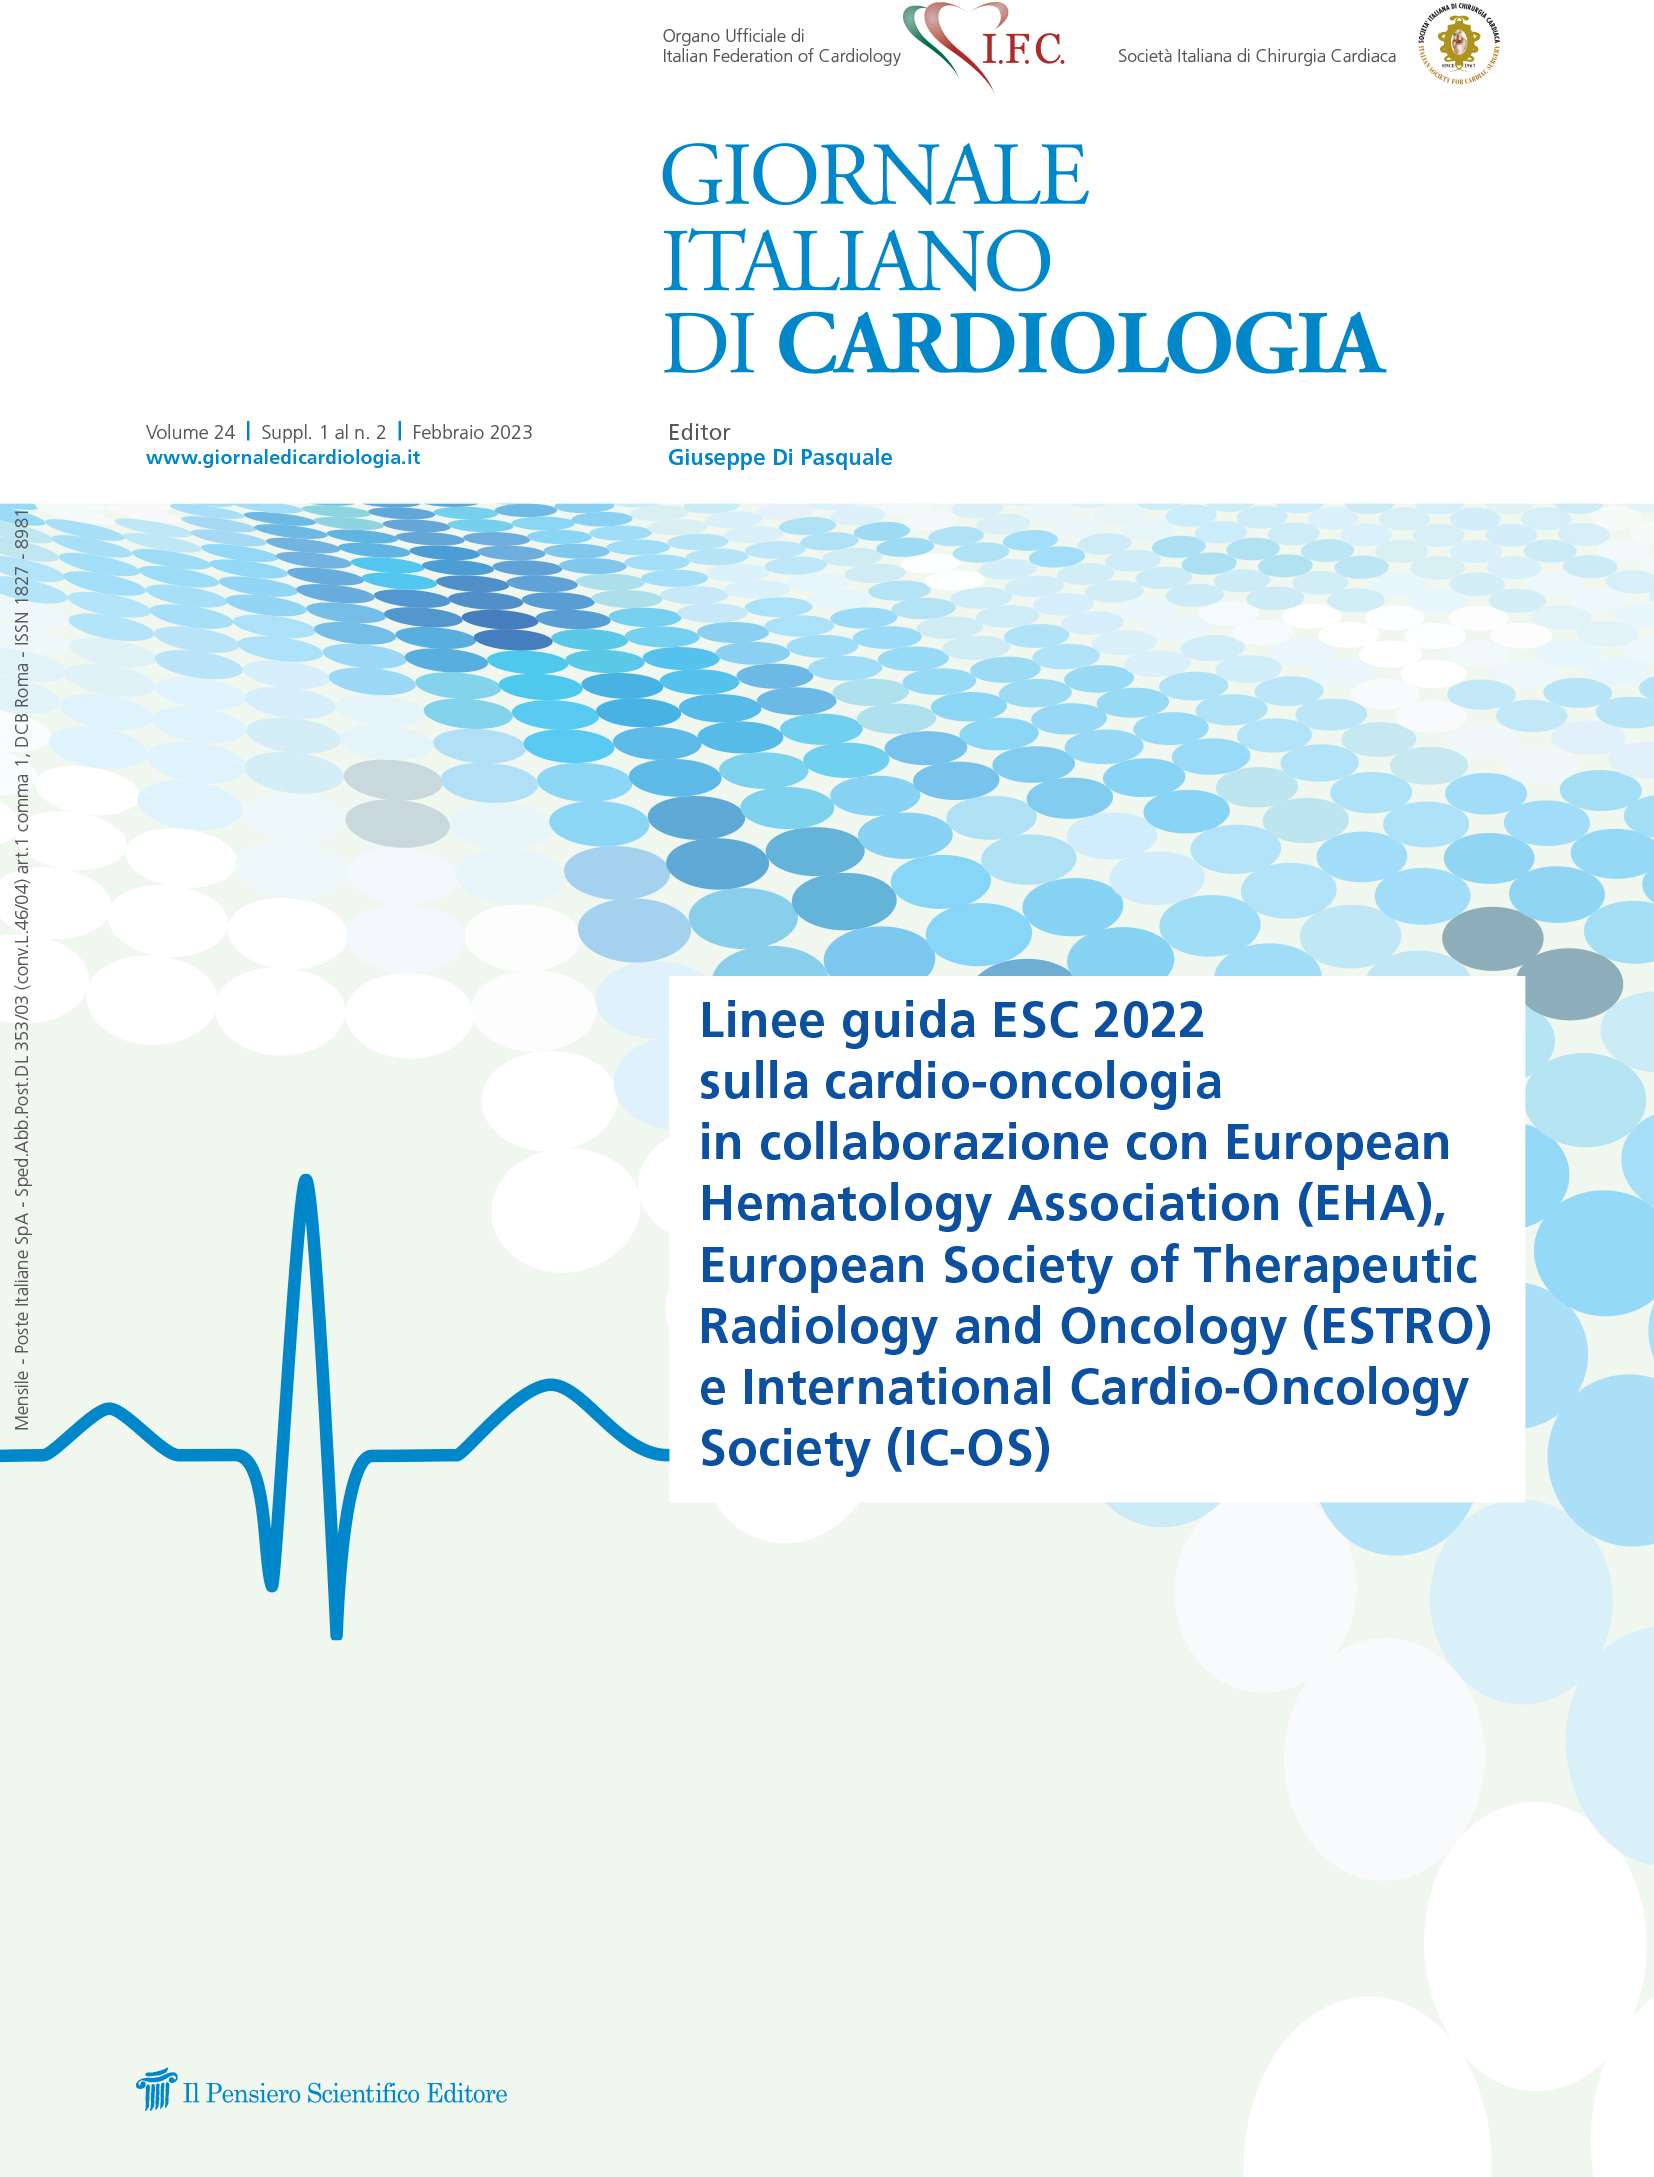 2023 Vol. 24 Suppl. 1 al N. 2 FebbraioLinee guida ESC 2022 sulla cardio-oncologia in collaborazione con European Hematology
Association (EHA), European Society of Therapeutic
Radiology and Oncology (ESTRO)
e International Cardio-Oncology Society (IC-OS)